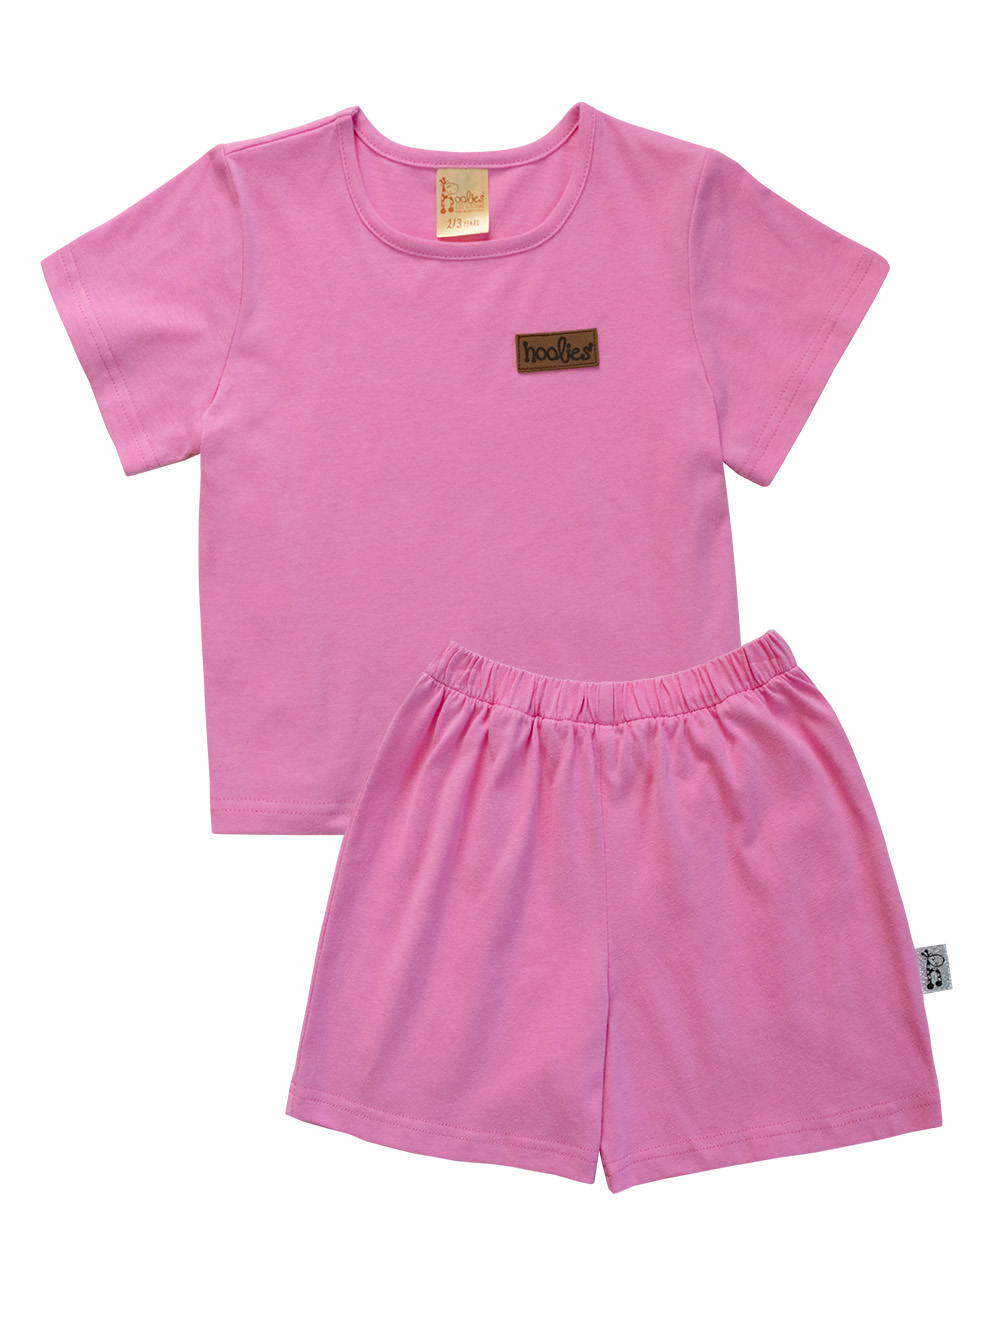 Bold Girls Pyjamas Pink Jammies Set (1-7yrs) – Hoolies Kids Summer Pajamas